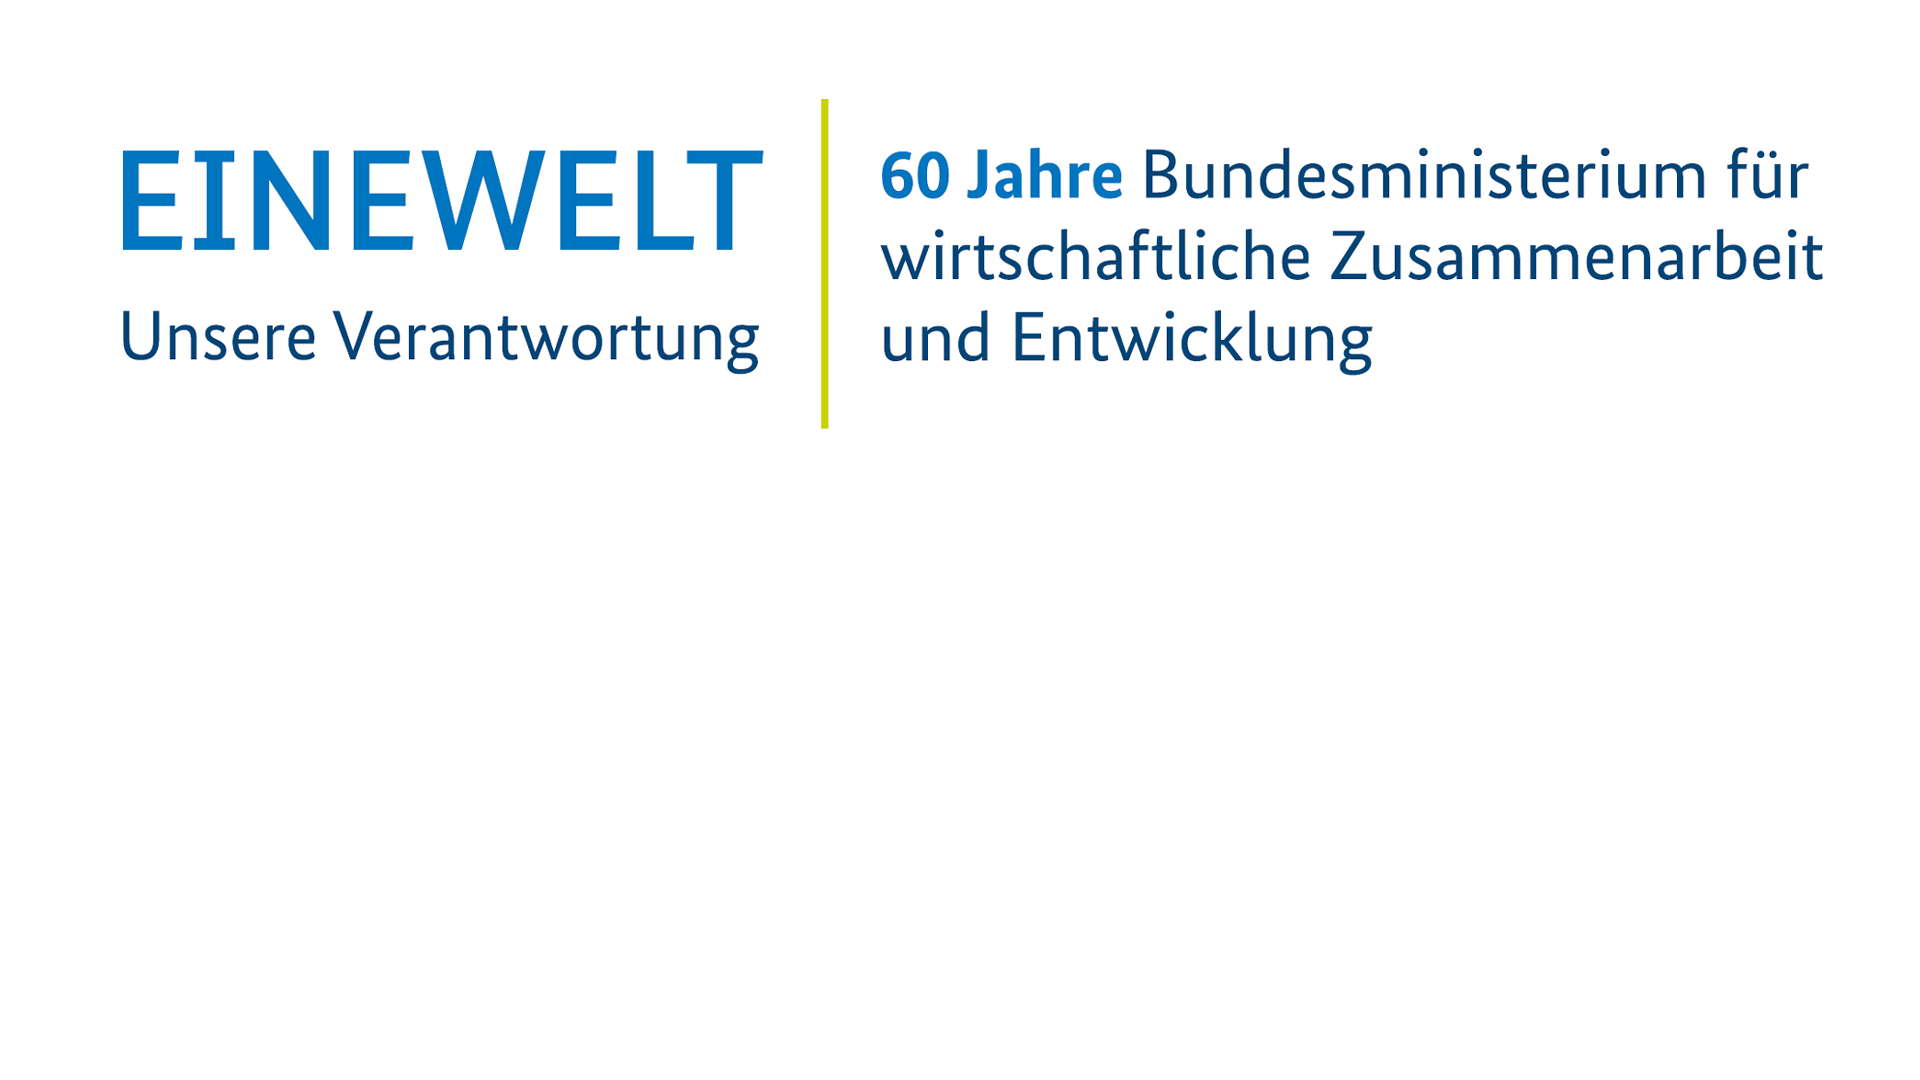 EINEWELT – Unsere Verantwortung | 60 Jahre Bundesministerium für wirtschaftliche Zusammenarbeit und Entwicklung